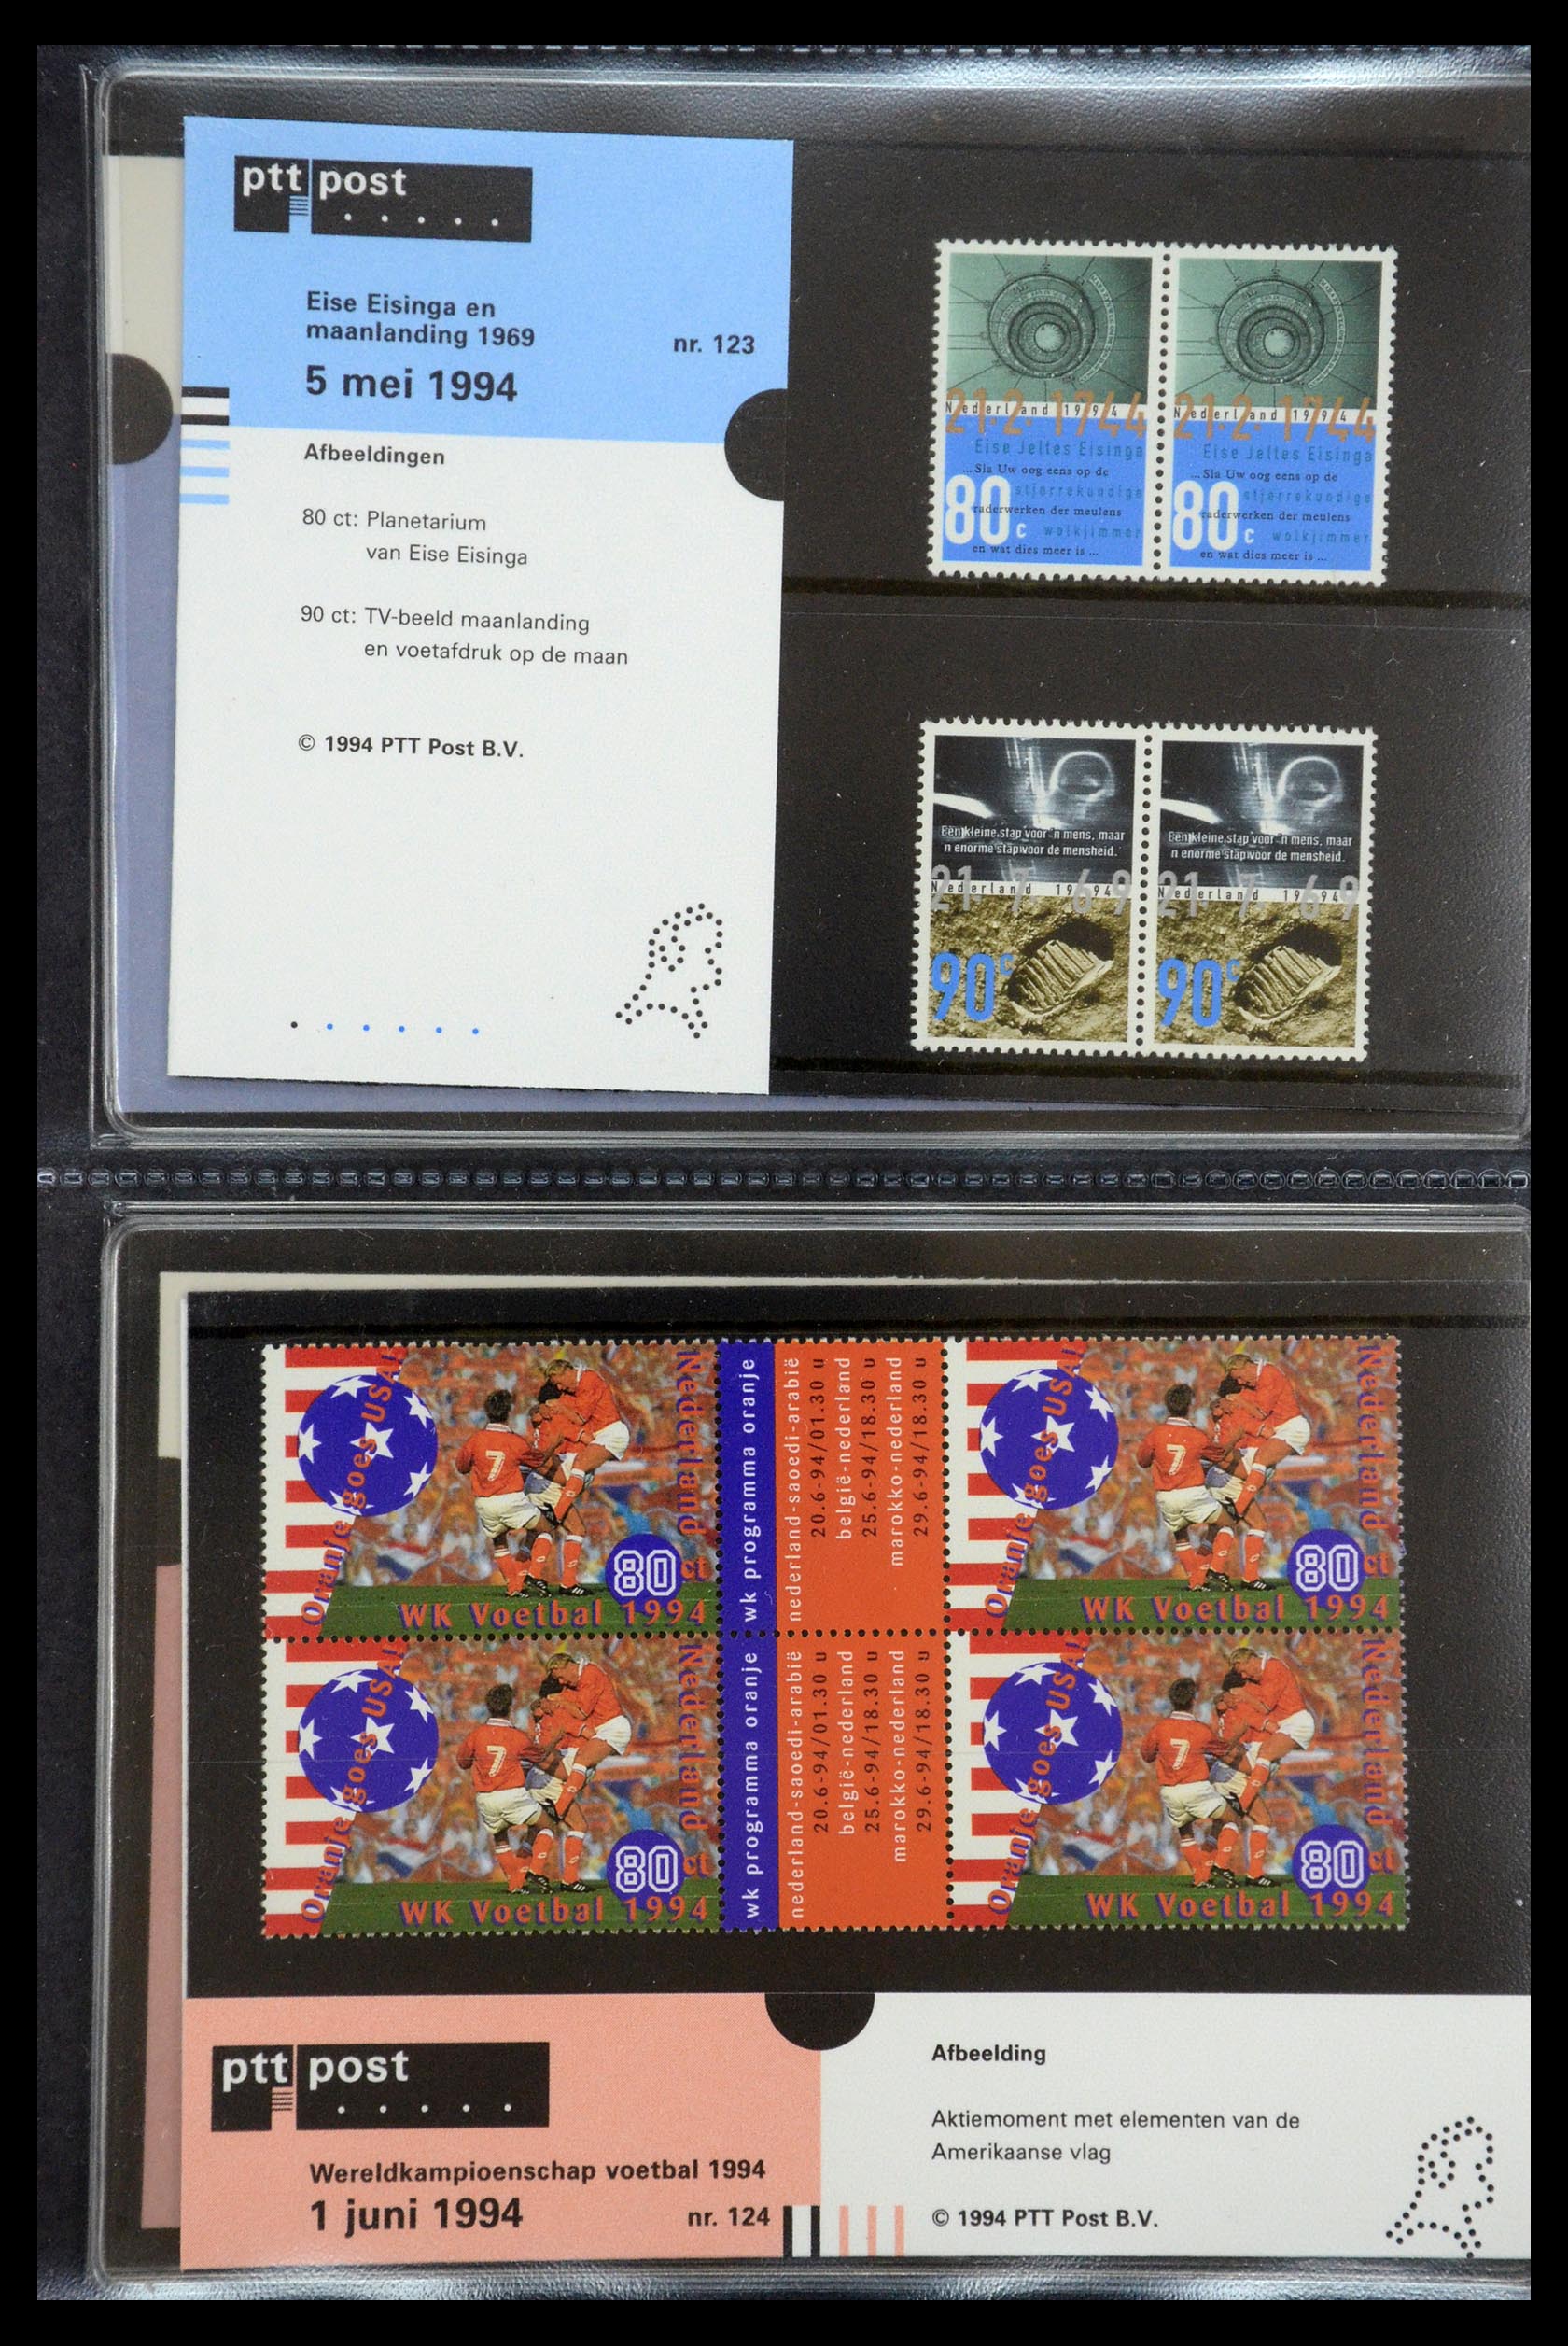 35187 063 - Stamp Collection 35187 Netherlands PTT presentation packs 1982-2019!